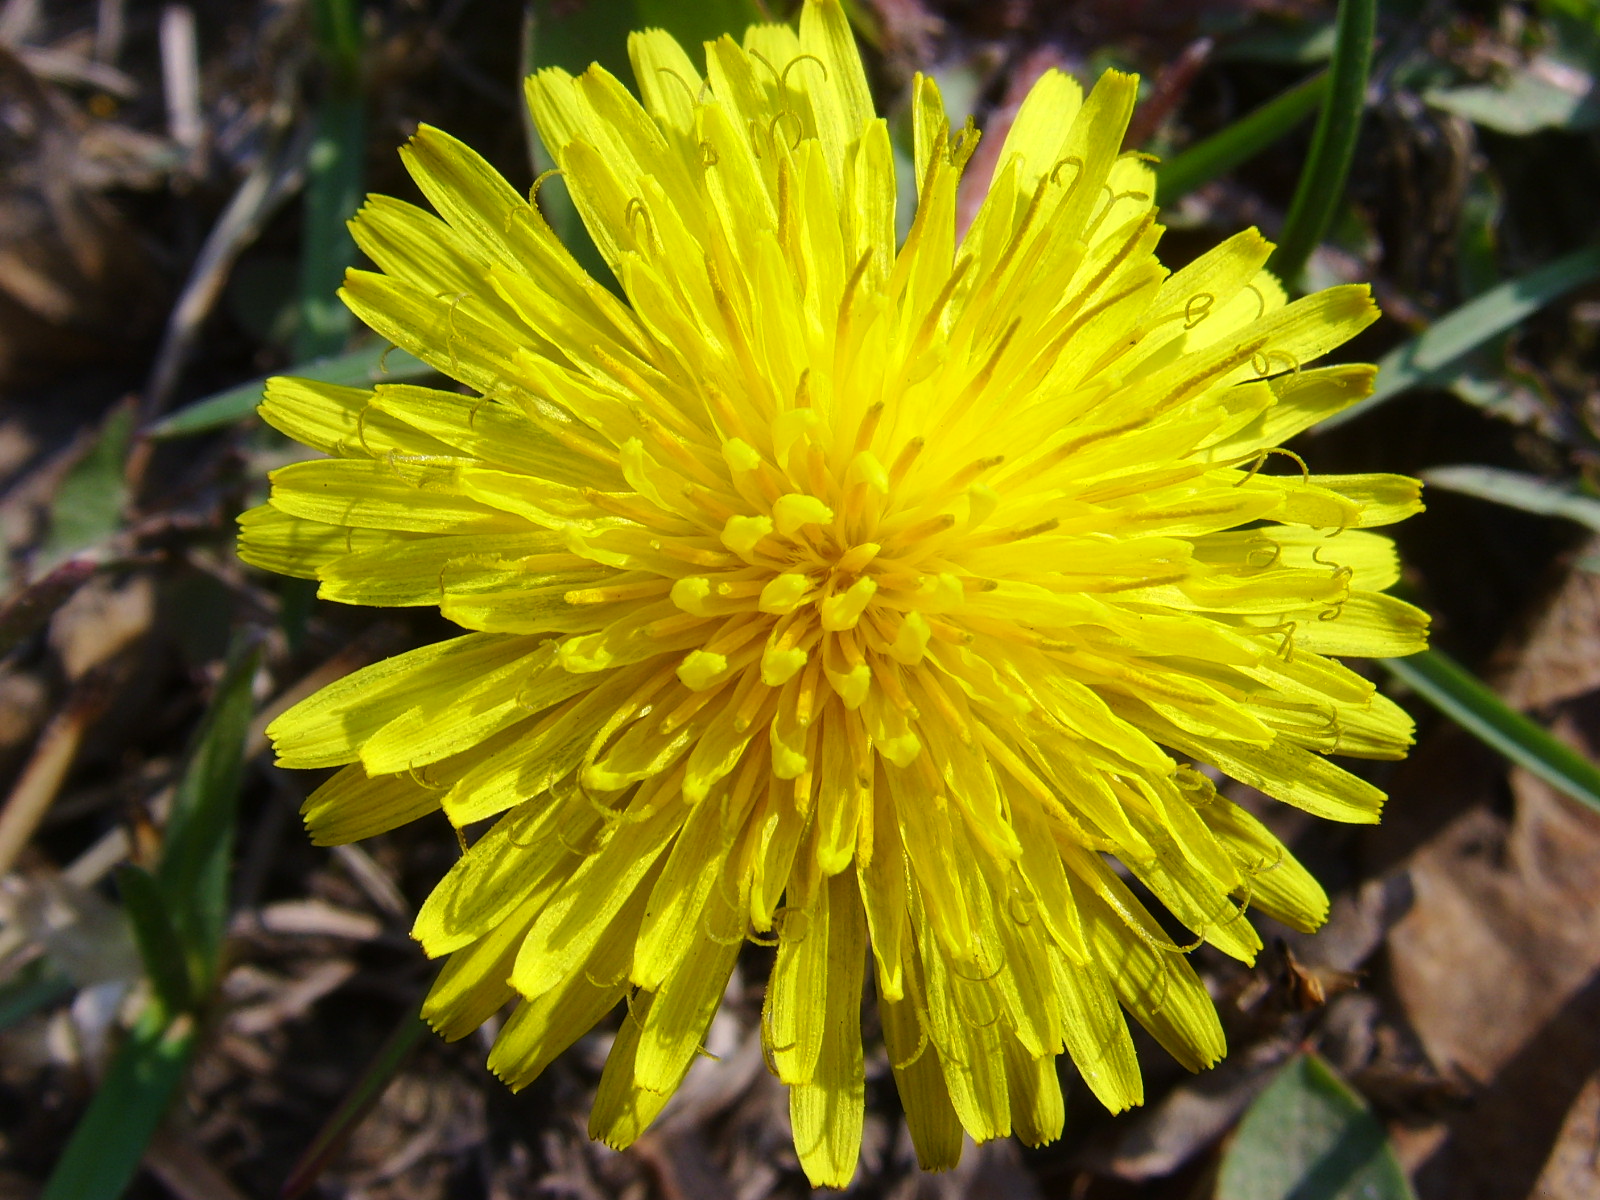 免费照片： 黄棕色, 美丽, 美丽的花朵, 盛开, 盛开, 开花, 束, 明亮, 芽, 堆